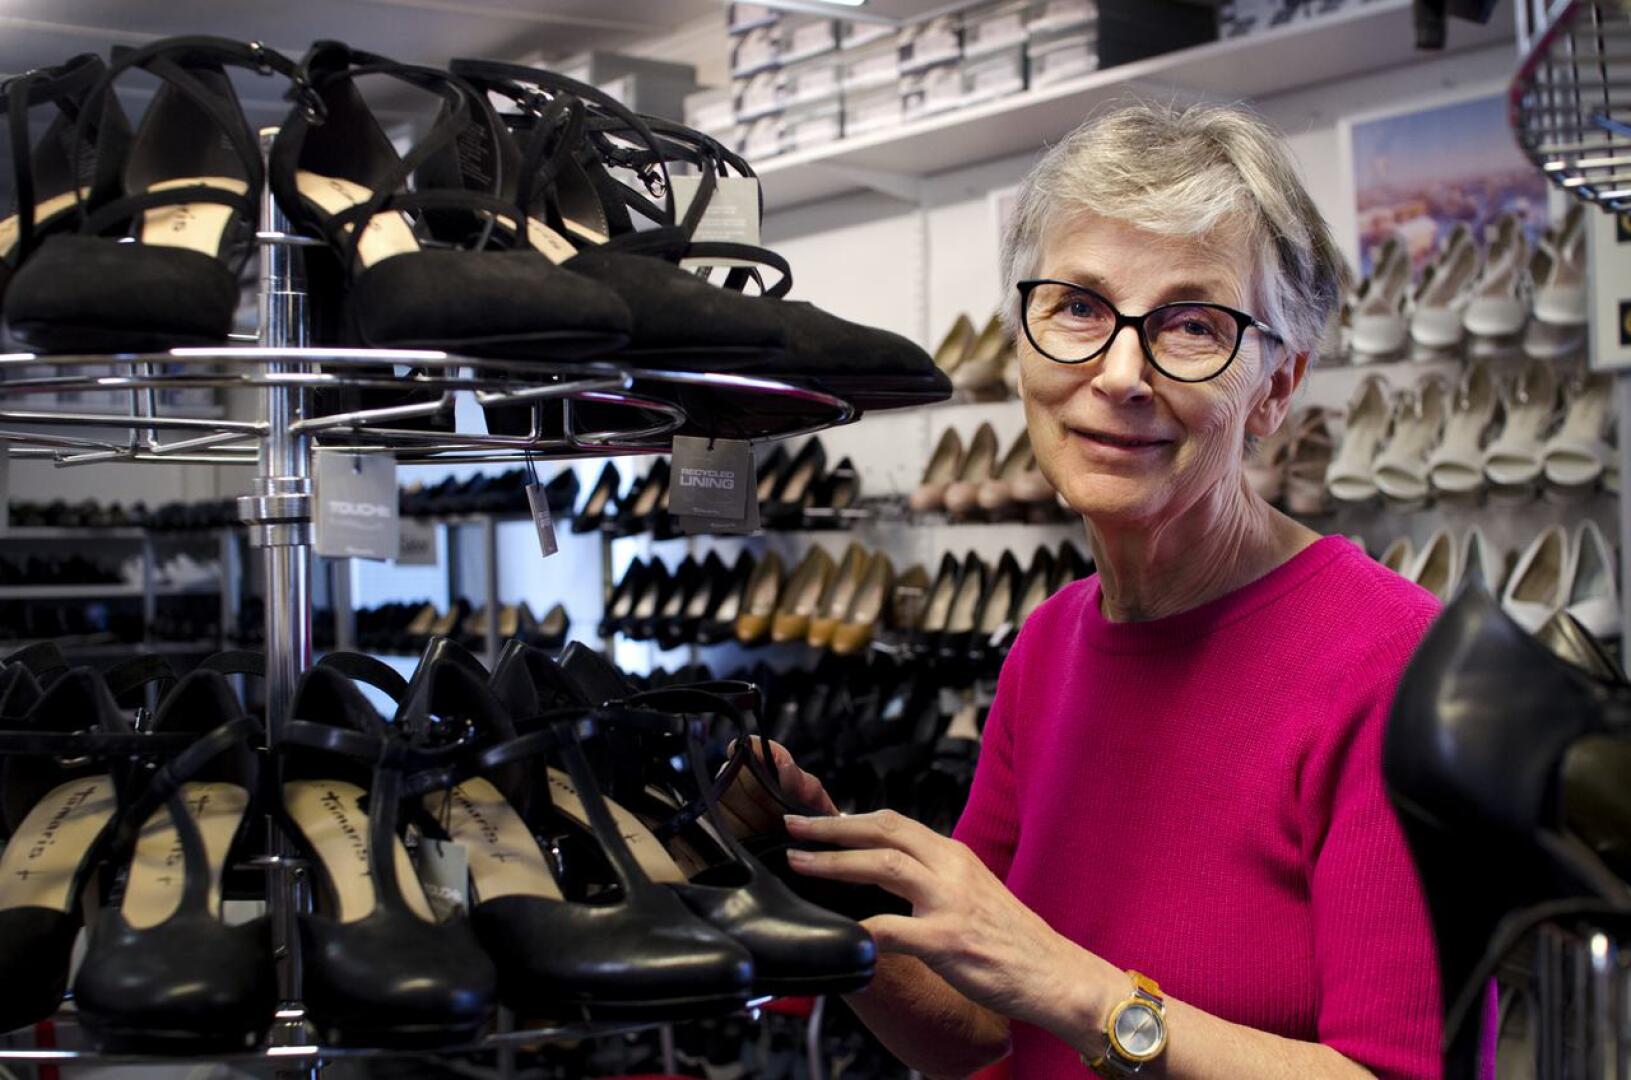 Ylivieskan kenkäkaupan yrittäjä Kaarina Juntunen valittiin vuoden 2022 Savisillan Santraksi. Hänestä Ylivieskassa on mukava toimia yrittäjänä.